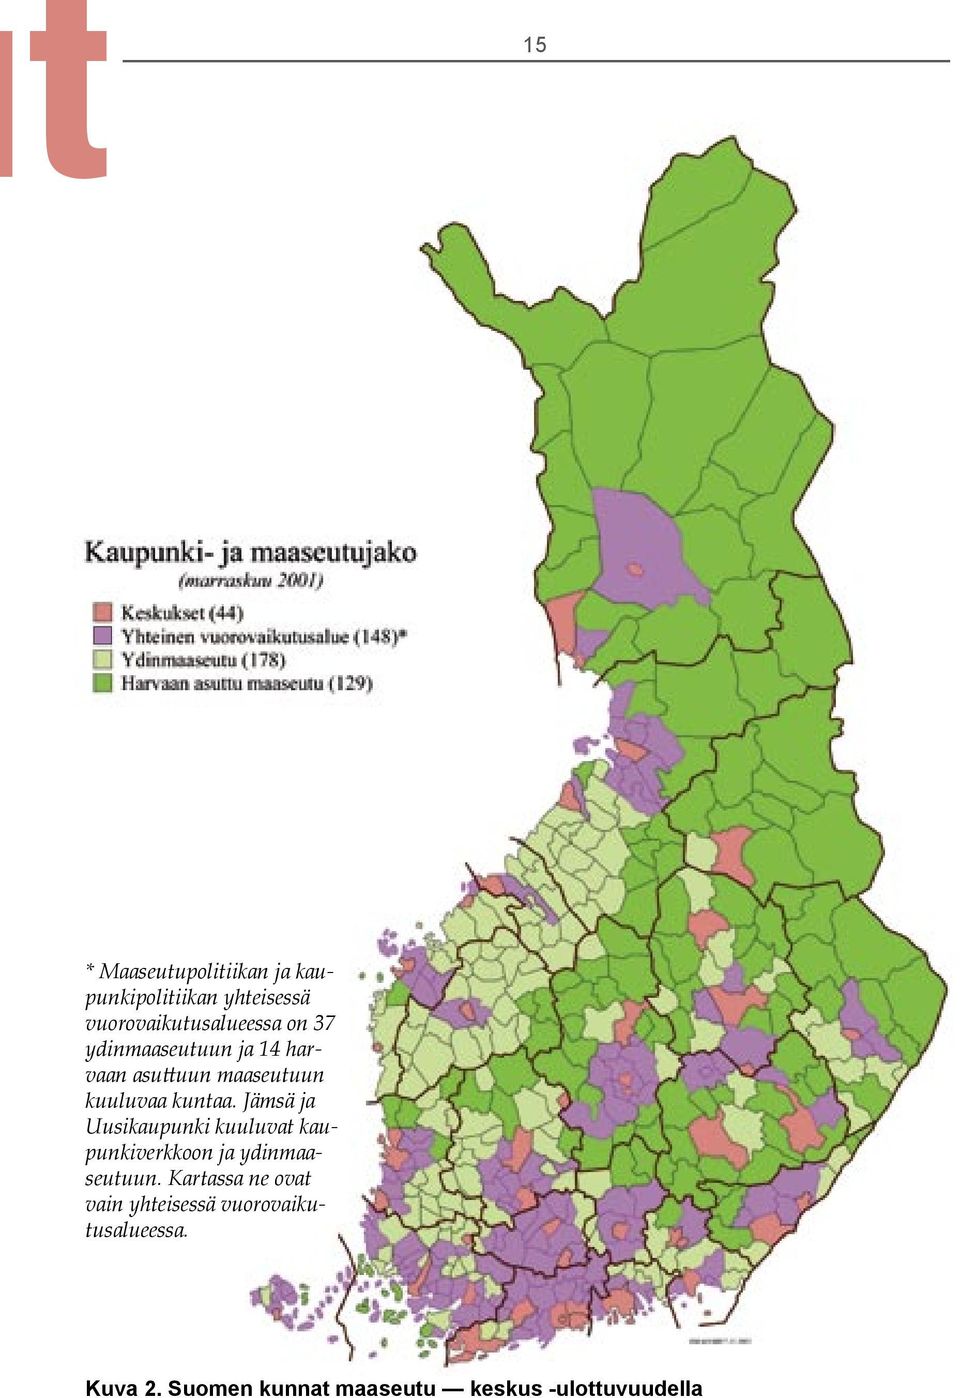 Jämsä ja Uusikaupunki kuuluvat kaupunkiverkkoon ja ydinmaaseutuun.